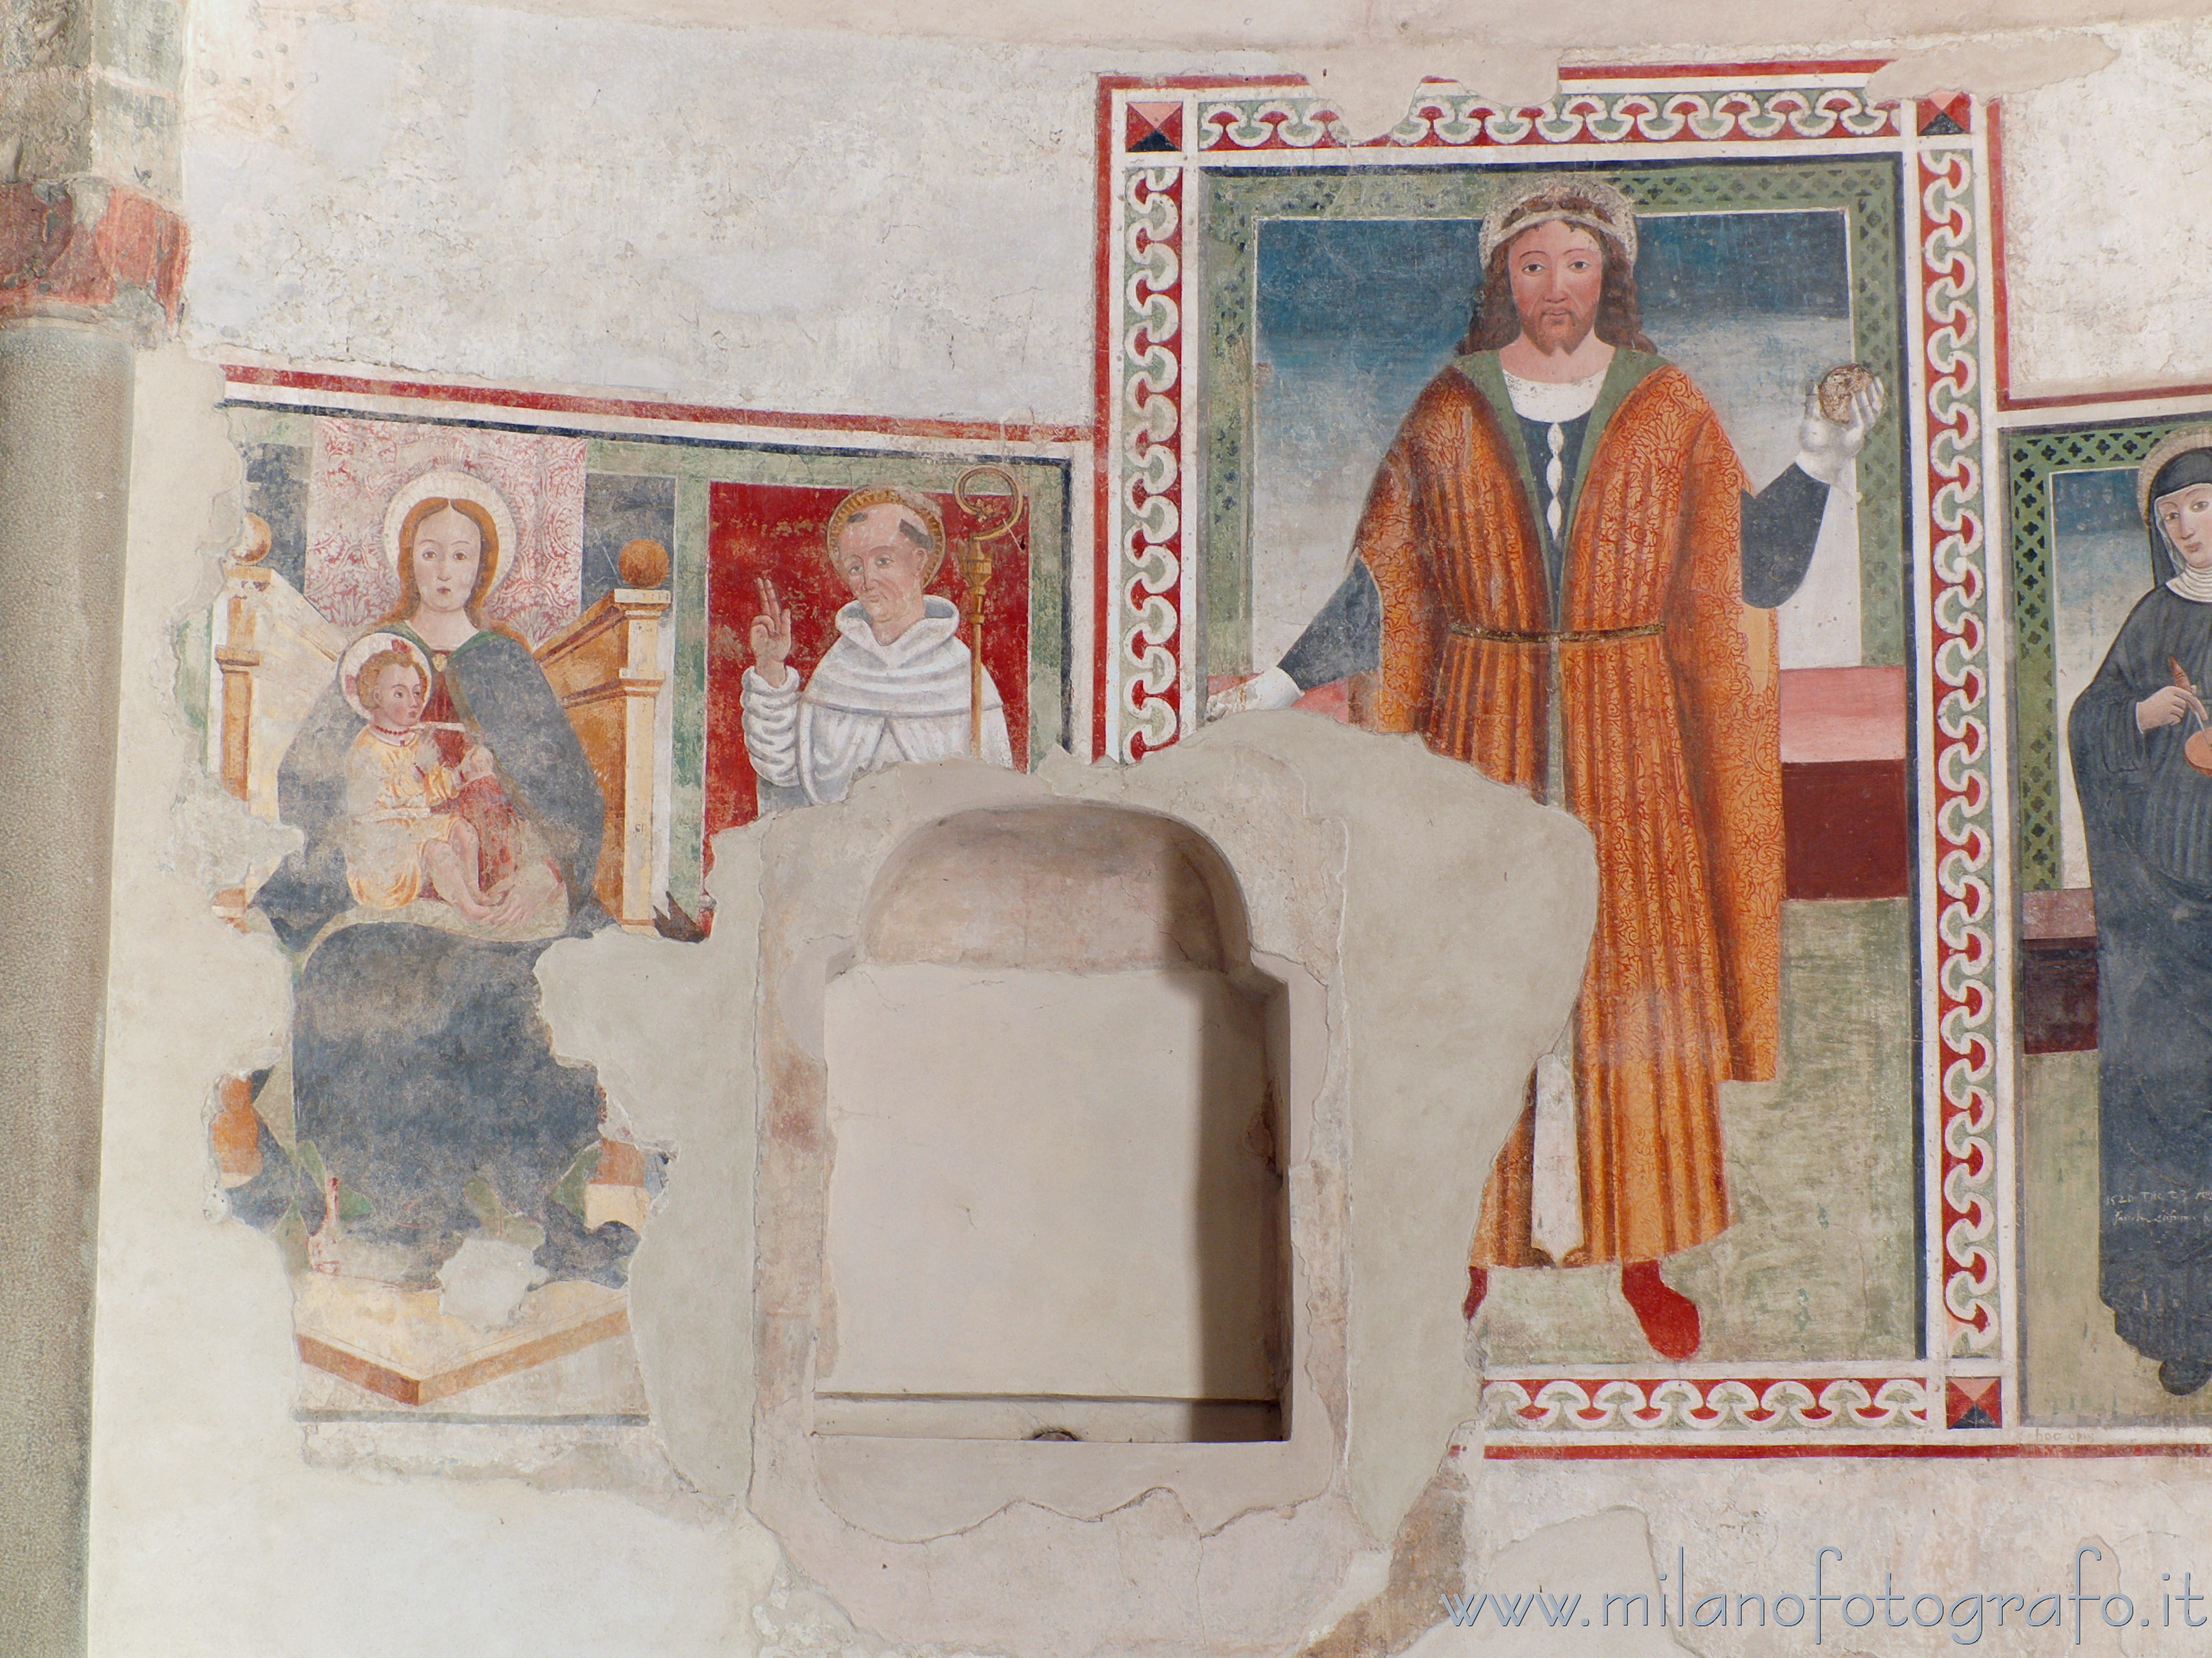 Oggiono (Lecco, Italy): Votive frescoes of saints in the Baptistery of San Giovanni Battista - Oggiono (Lecco, Italy)